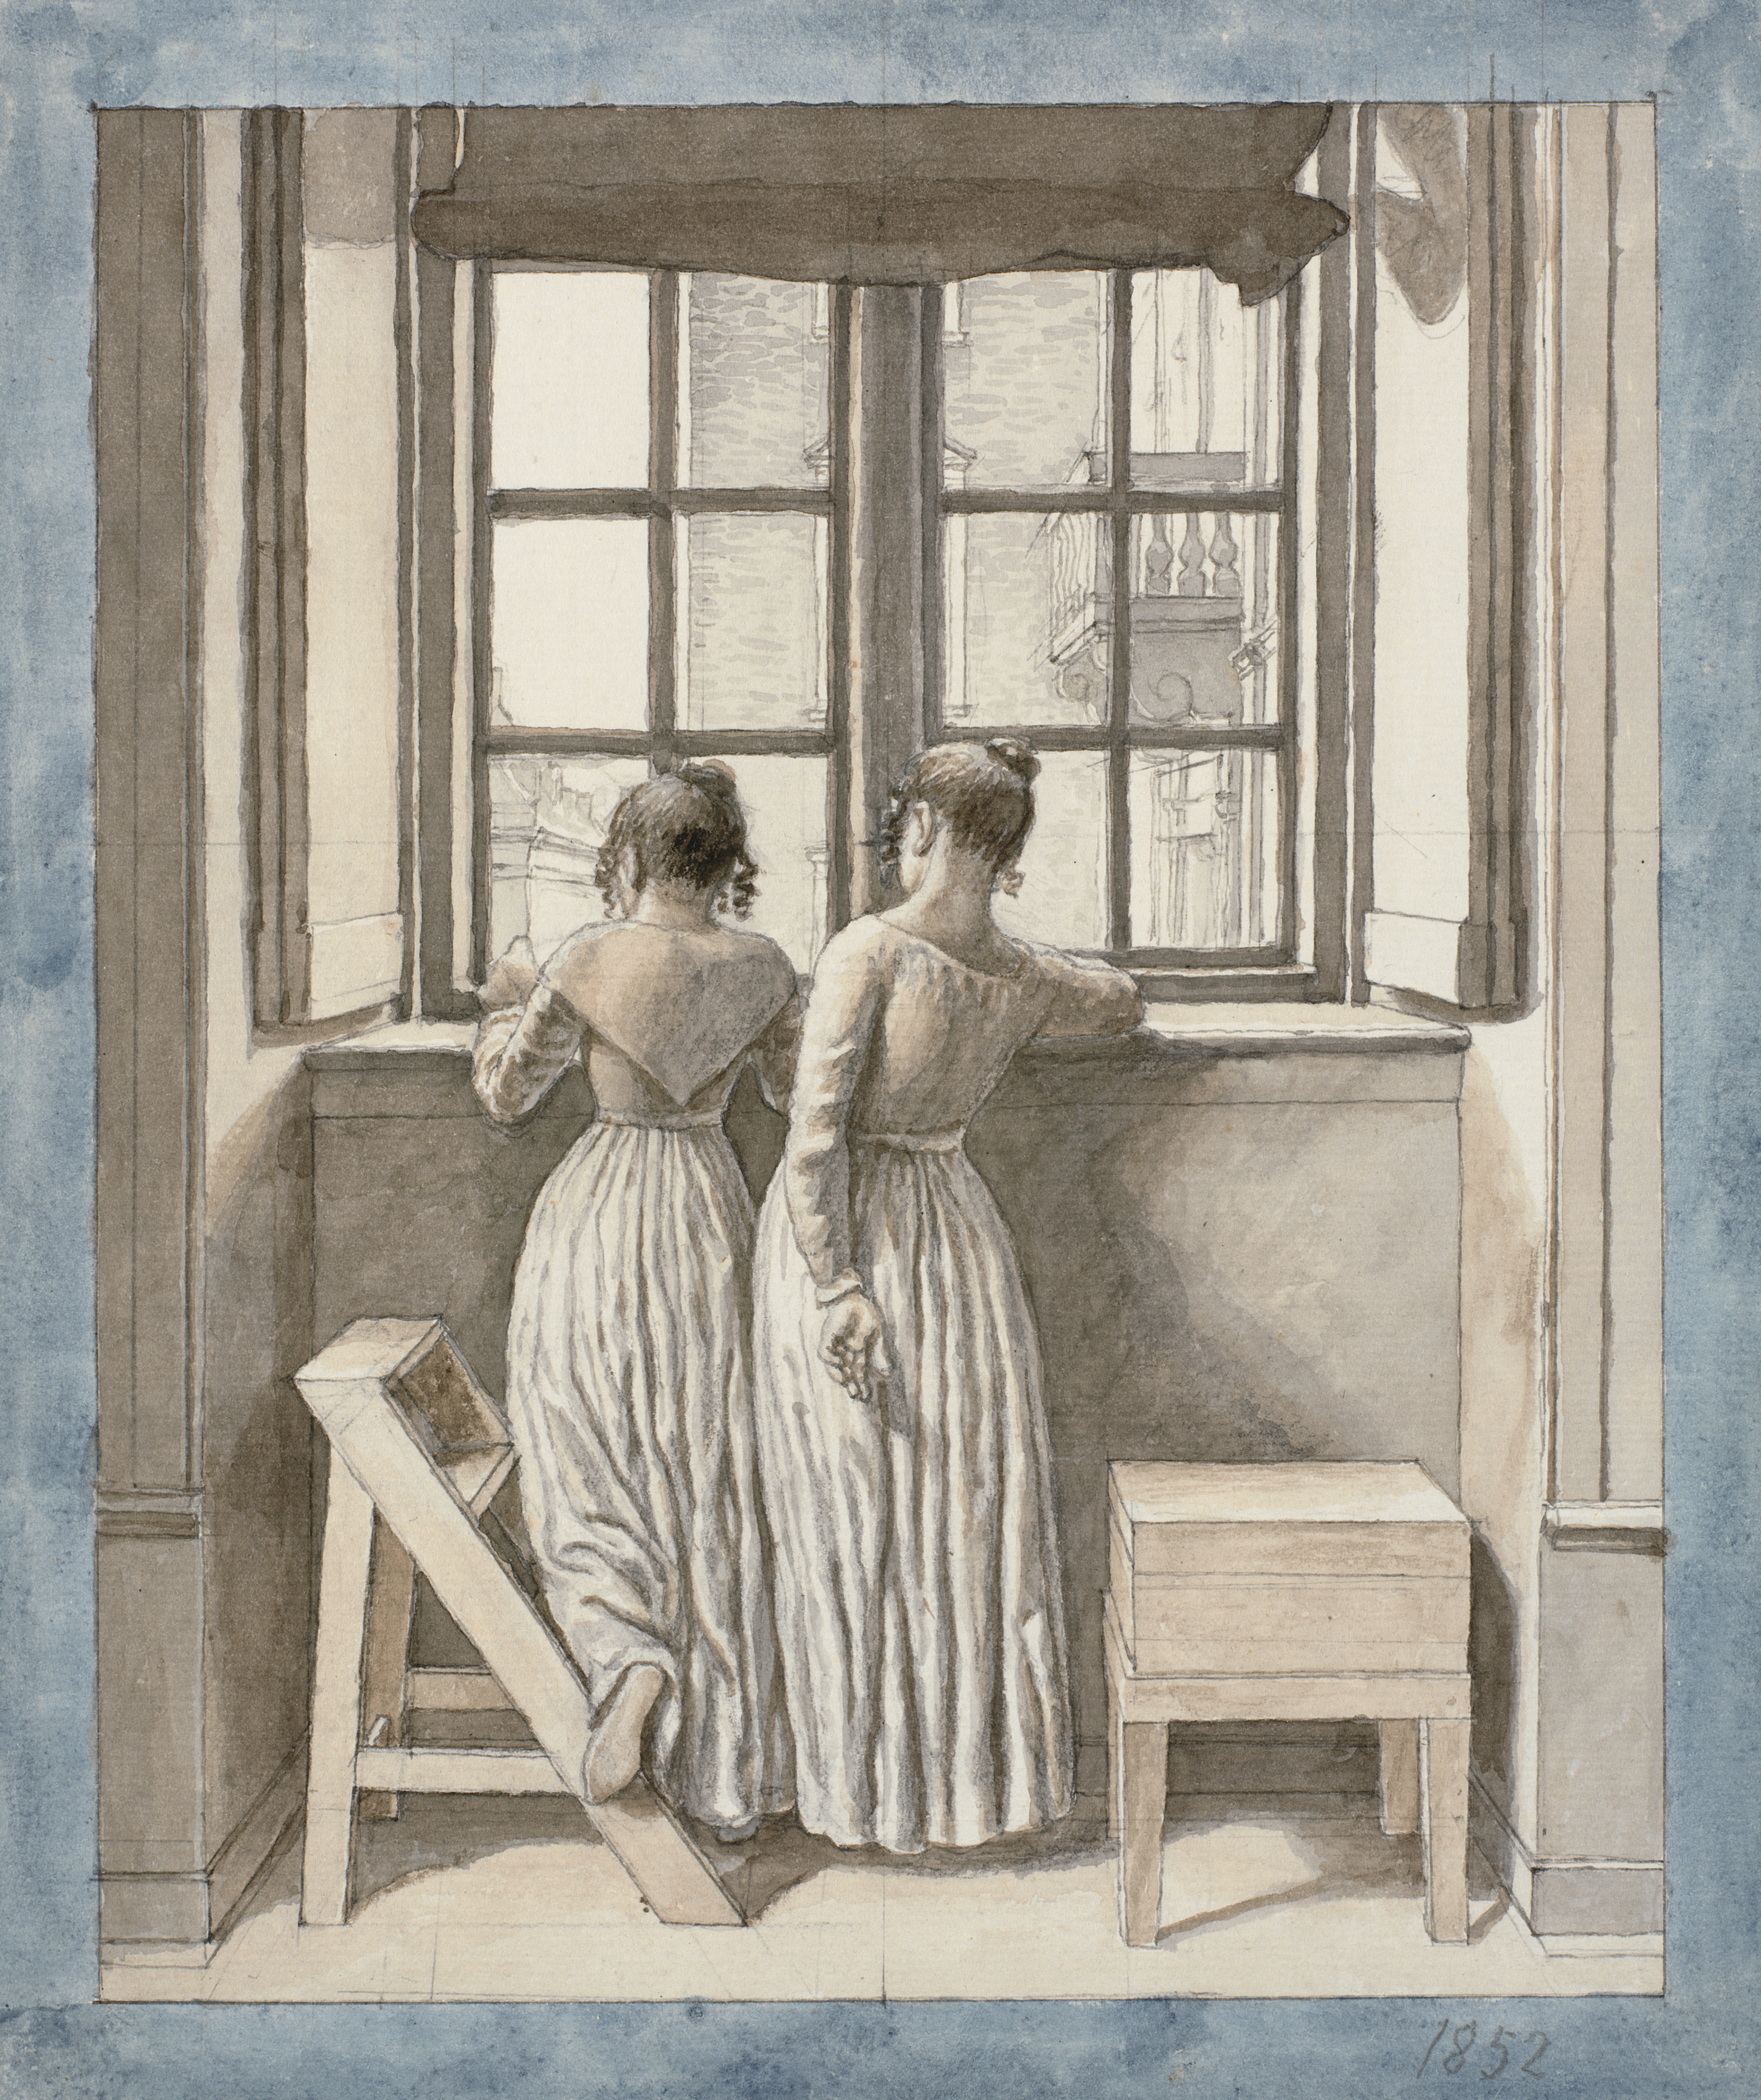 En una ventana en el estudio del artista by C.W. Eckersberg - 1852 - 274 x 231 mm Galería Nacional de Dinamarca